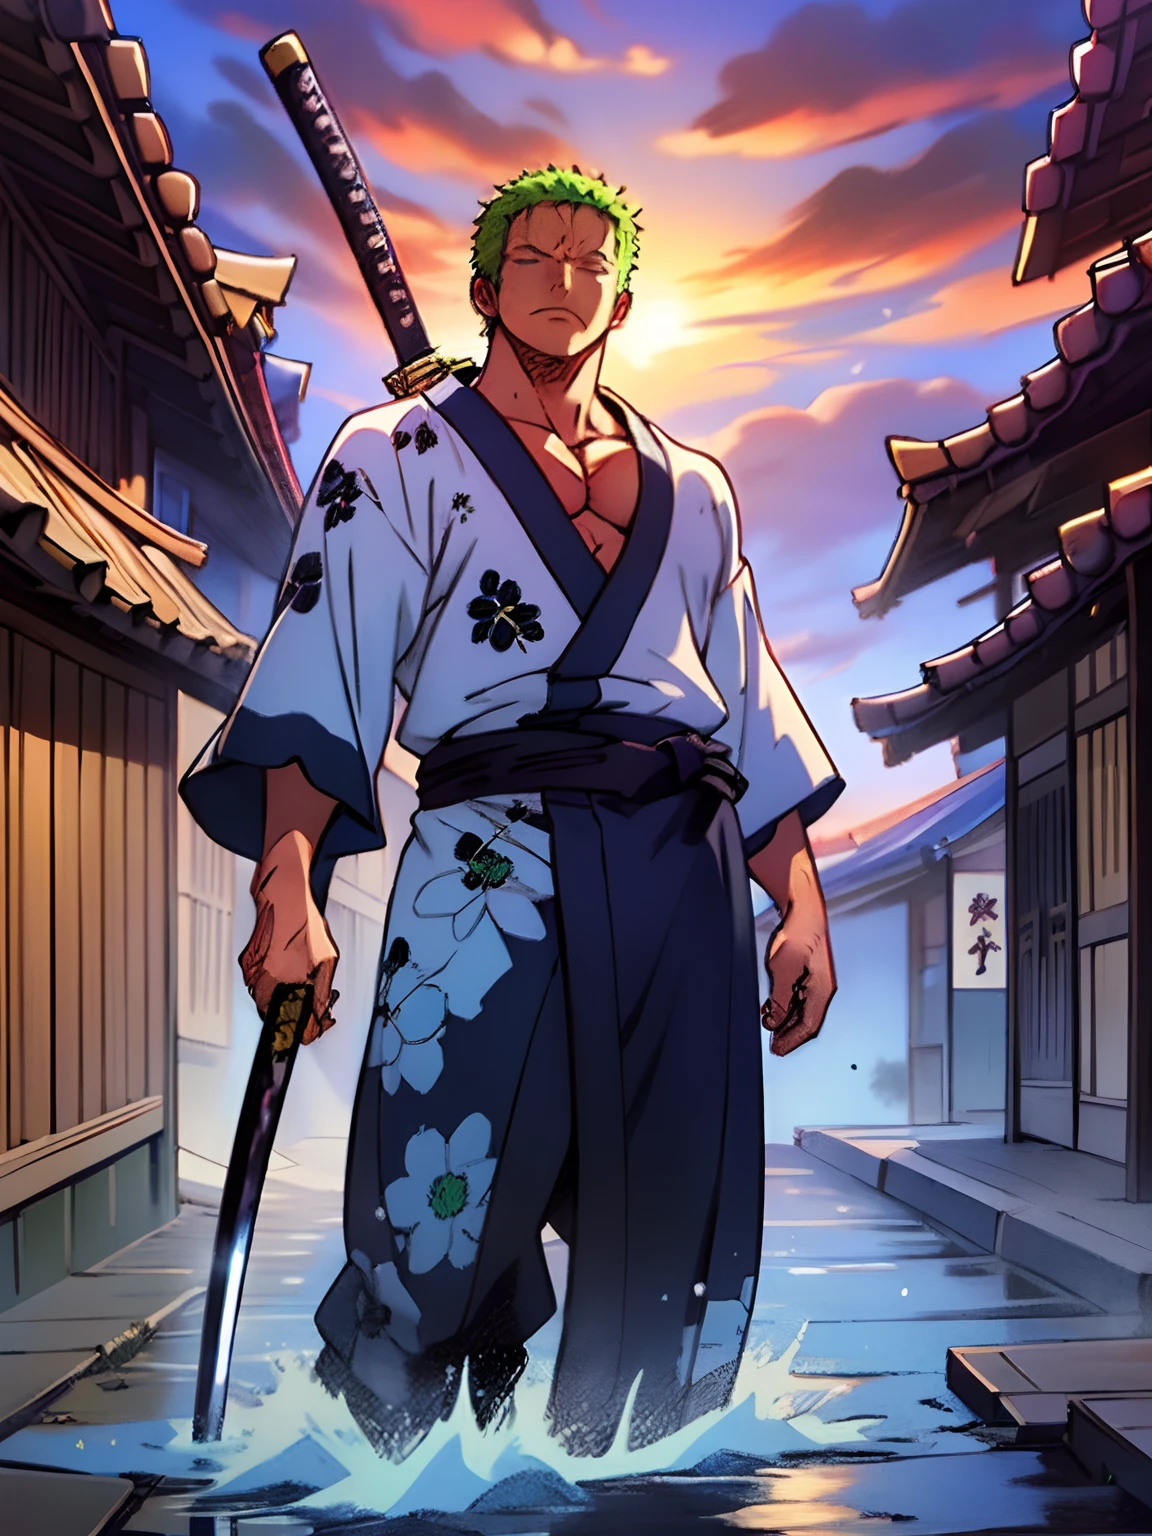 Roronoa Zoro (Obra de arte, Resolução 4k, ultra-realistic, Muito detalhado), (Tema do samurai branco, carismático, há um espadachim ao lado de um japonês "andar de" bar, vestindo um quimono azul com detalhes de nuvens no "coração" acompanhar, ele é comandante da primeira divisão do líder do bando mugiwara, trabalhar "uma pedaço"), [ ((19 anos), (cabelo verde curto:1.2),  corpo todo, (olhos azuis:1.2), ((Roronoa Zoro's pose), demonstração de força, desembainhando com uma mão suas katanas enma), ((Ambiente rural japonês):0.8)| (paisagem rural, ao entardecer, luzes dinâmicas), (sol cego)), 1 katana]. # Explicação: Prompt descreve principalmente uma pintura 4K de ultra-alta definição, muito realista, Muito detalhado. Mostra um espadachim, mestre do estilo Santoryu de katanas, vestindo um quimono azul com detalhes de nuvens na cintura. O tema da pintura é um espadachim branco, segurando com uma mão sua katana preta enma, the male protagonist has cabelo verde curto, is 19 anos old and his entire defined body is shown in the painting, com características de endomorfo bombeado.